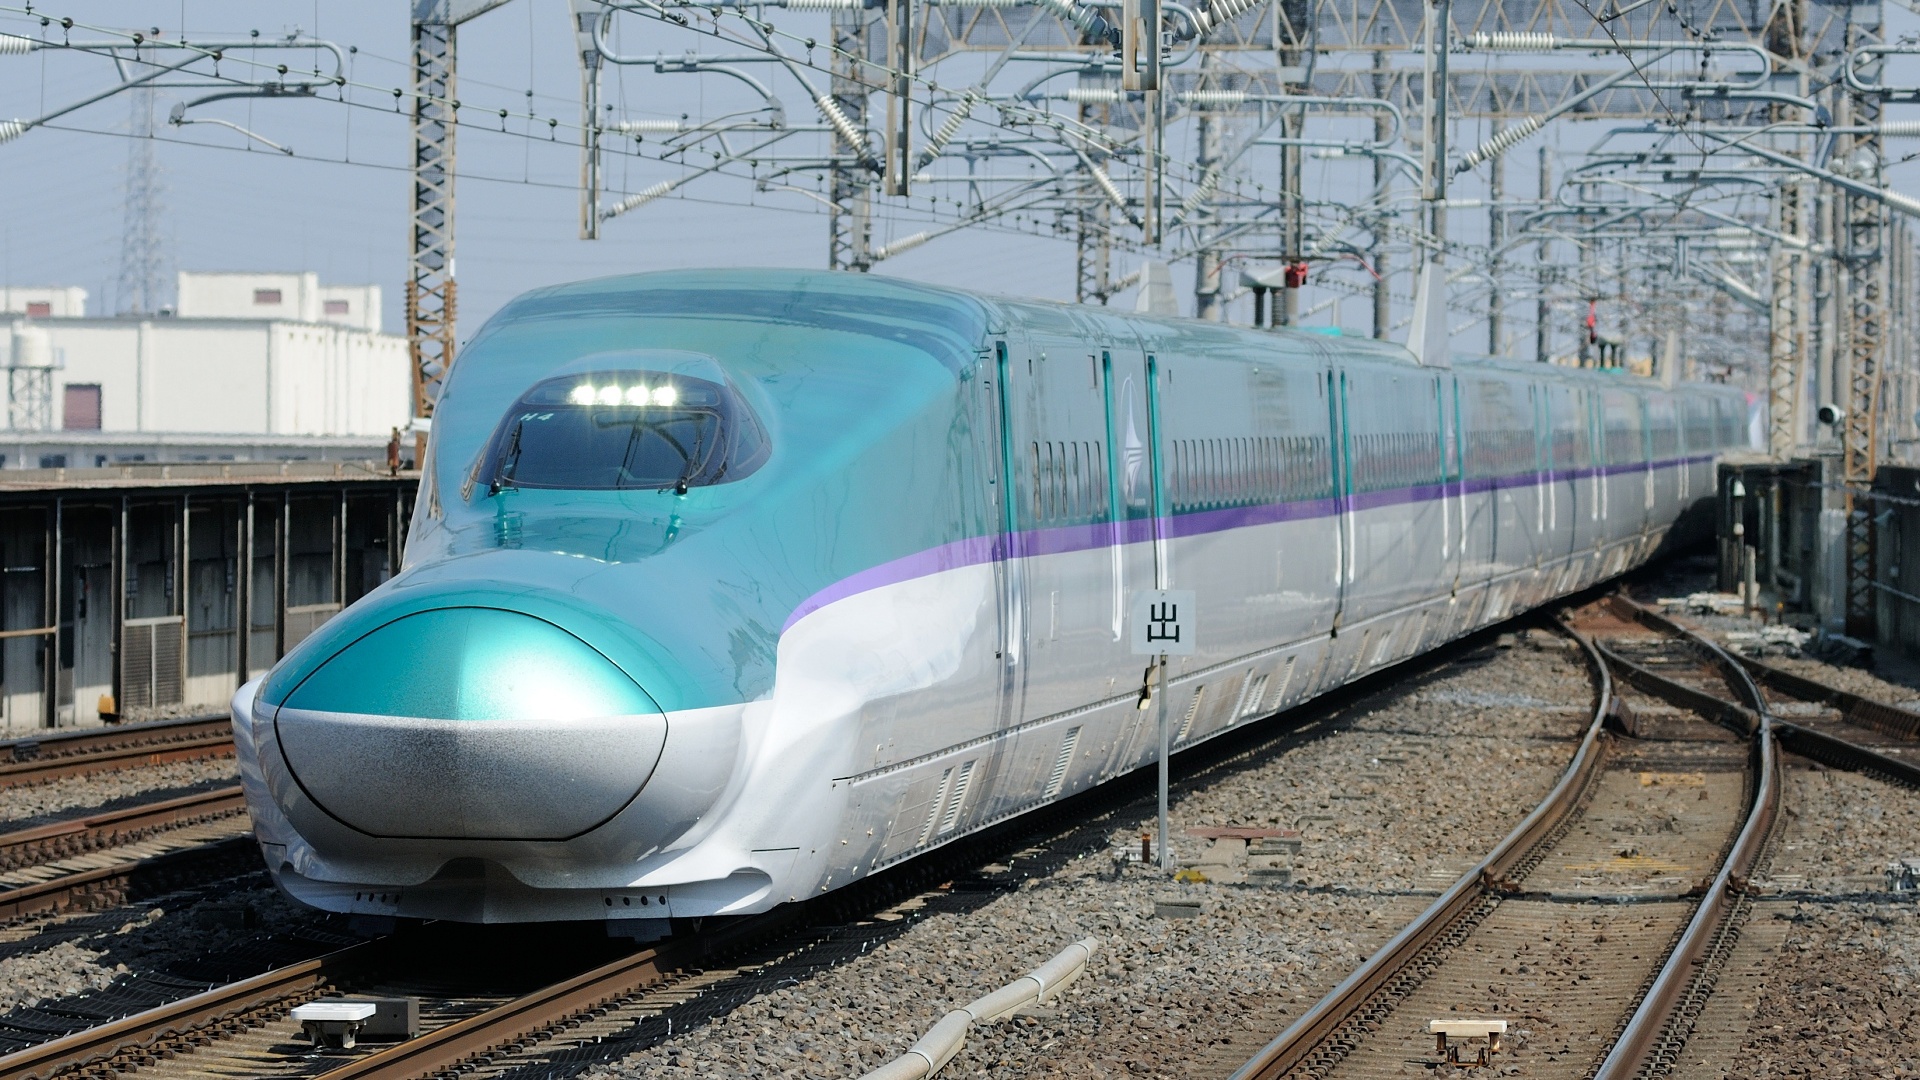 鉄道 新幹線 北海道新幹線 H5系 はやぶさ10号 壁紙19x1080 壁紙館